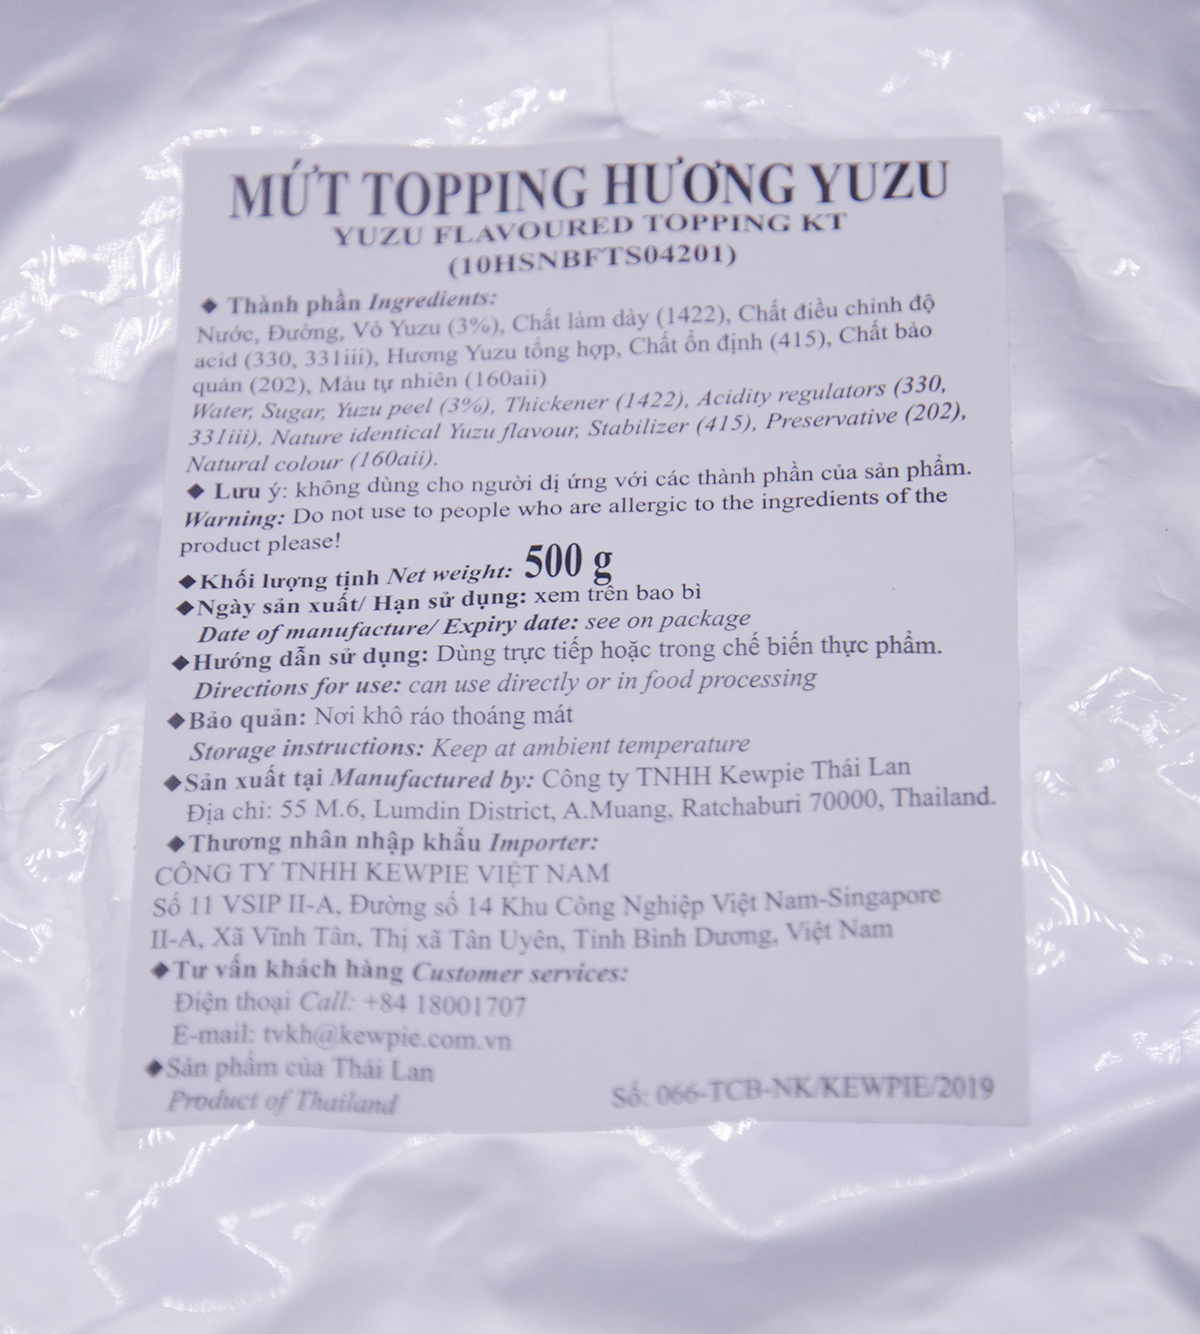 MUT_TOPPING_HUONG_YUZU